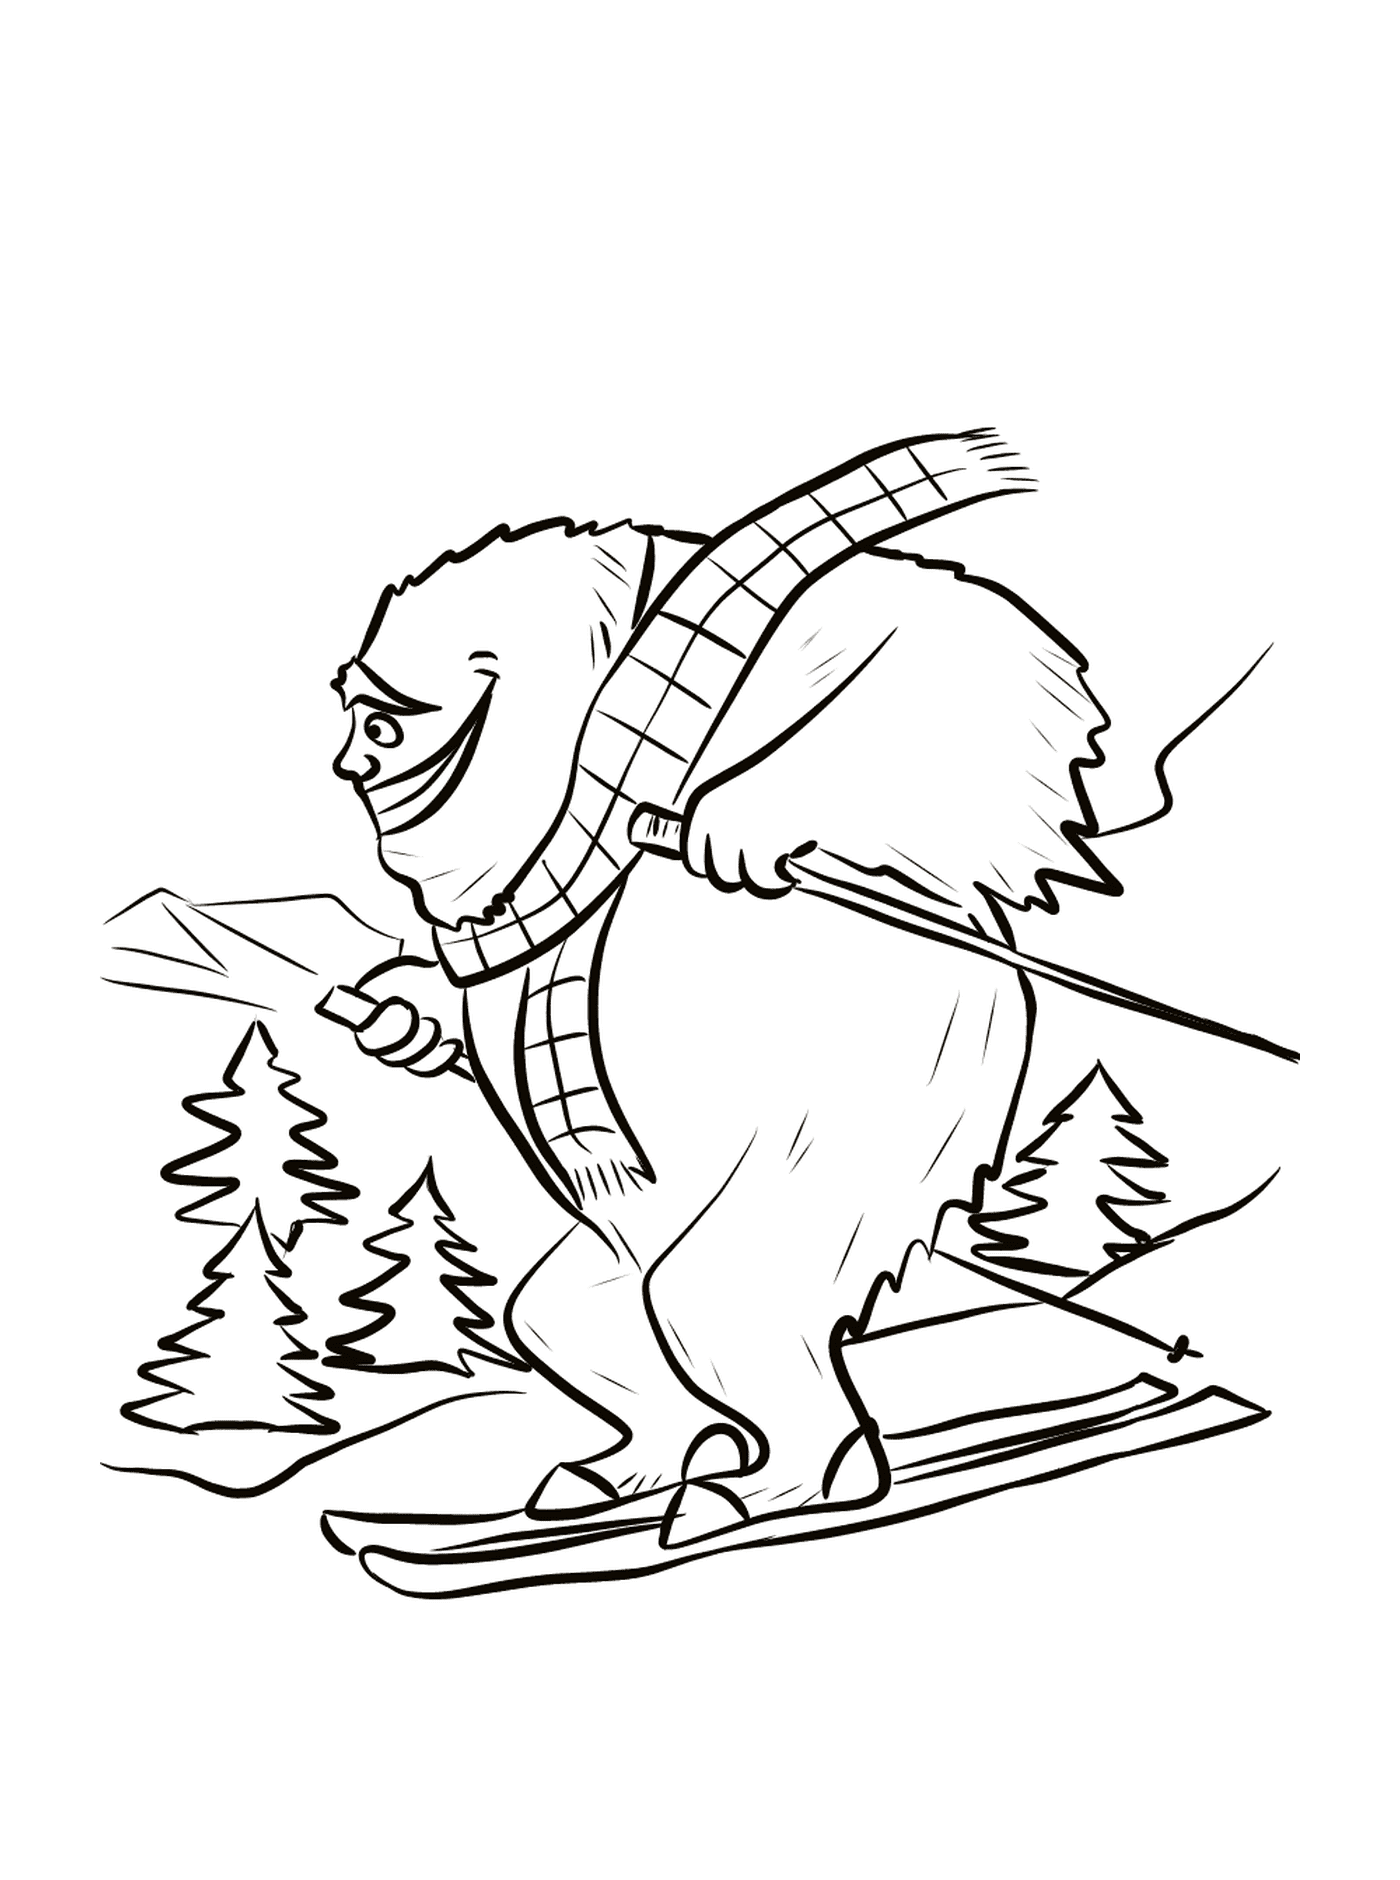  Полярные медведи катаются на лыжах 